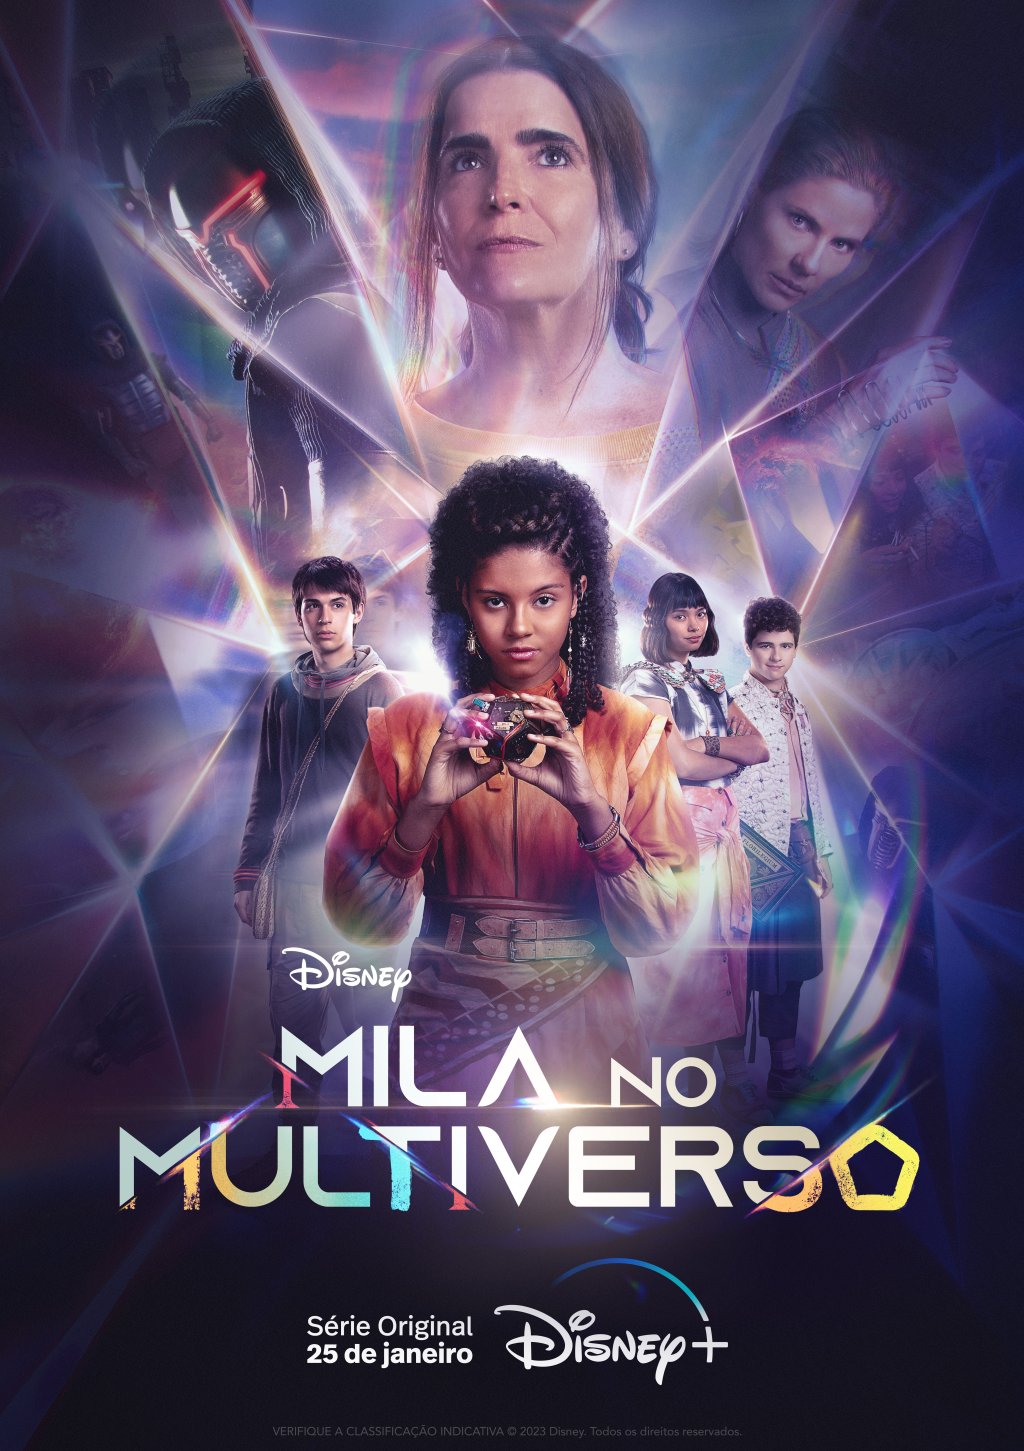 Pôster dos personagens de Mila no Multiverso com detalhes em roxo e o nome da série na parte inferior central da imagem